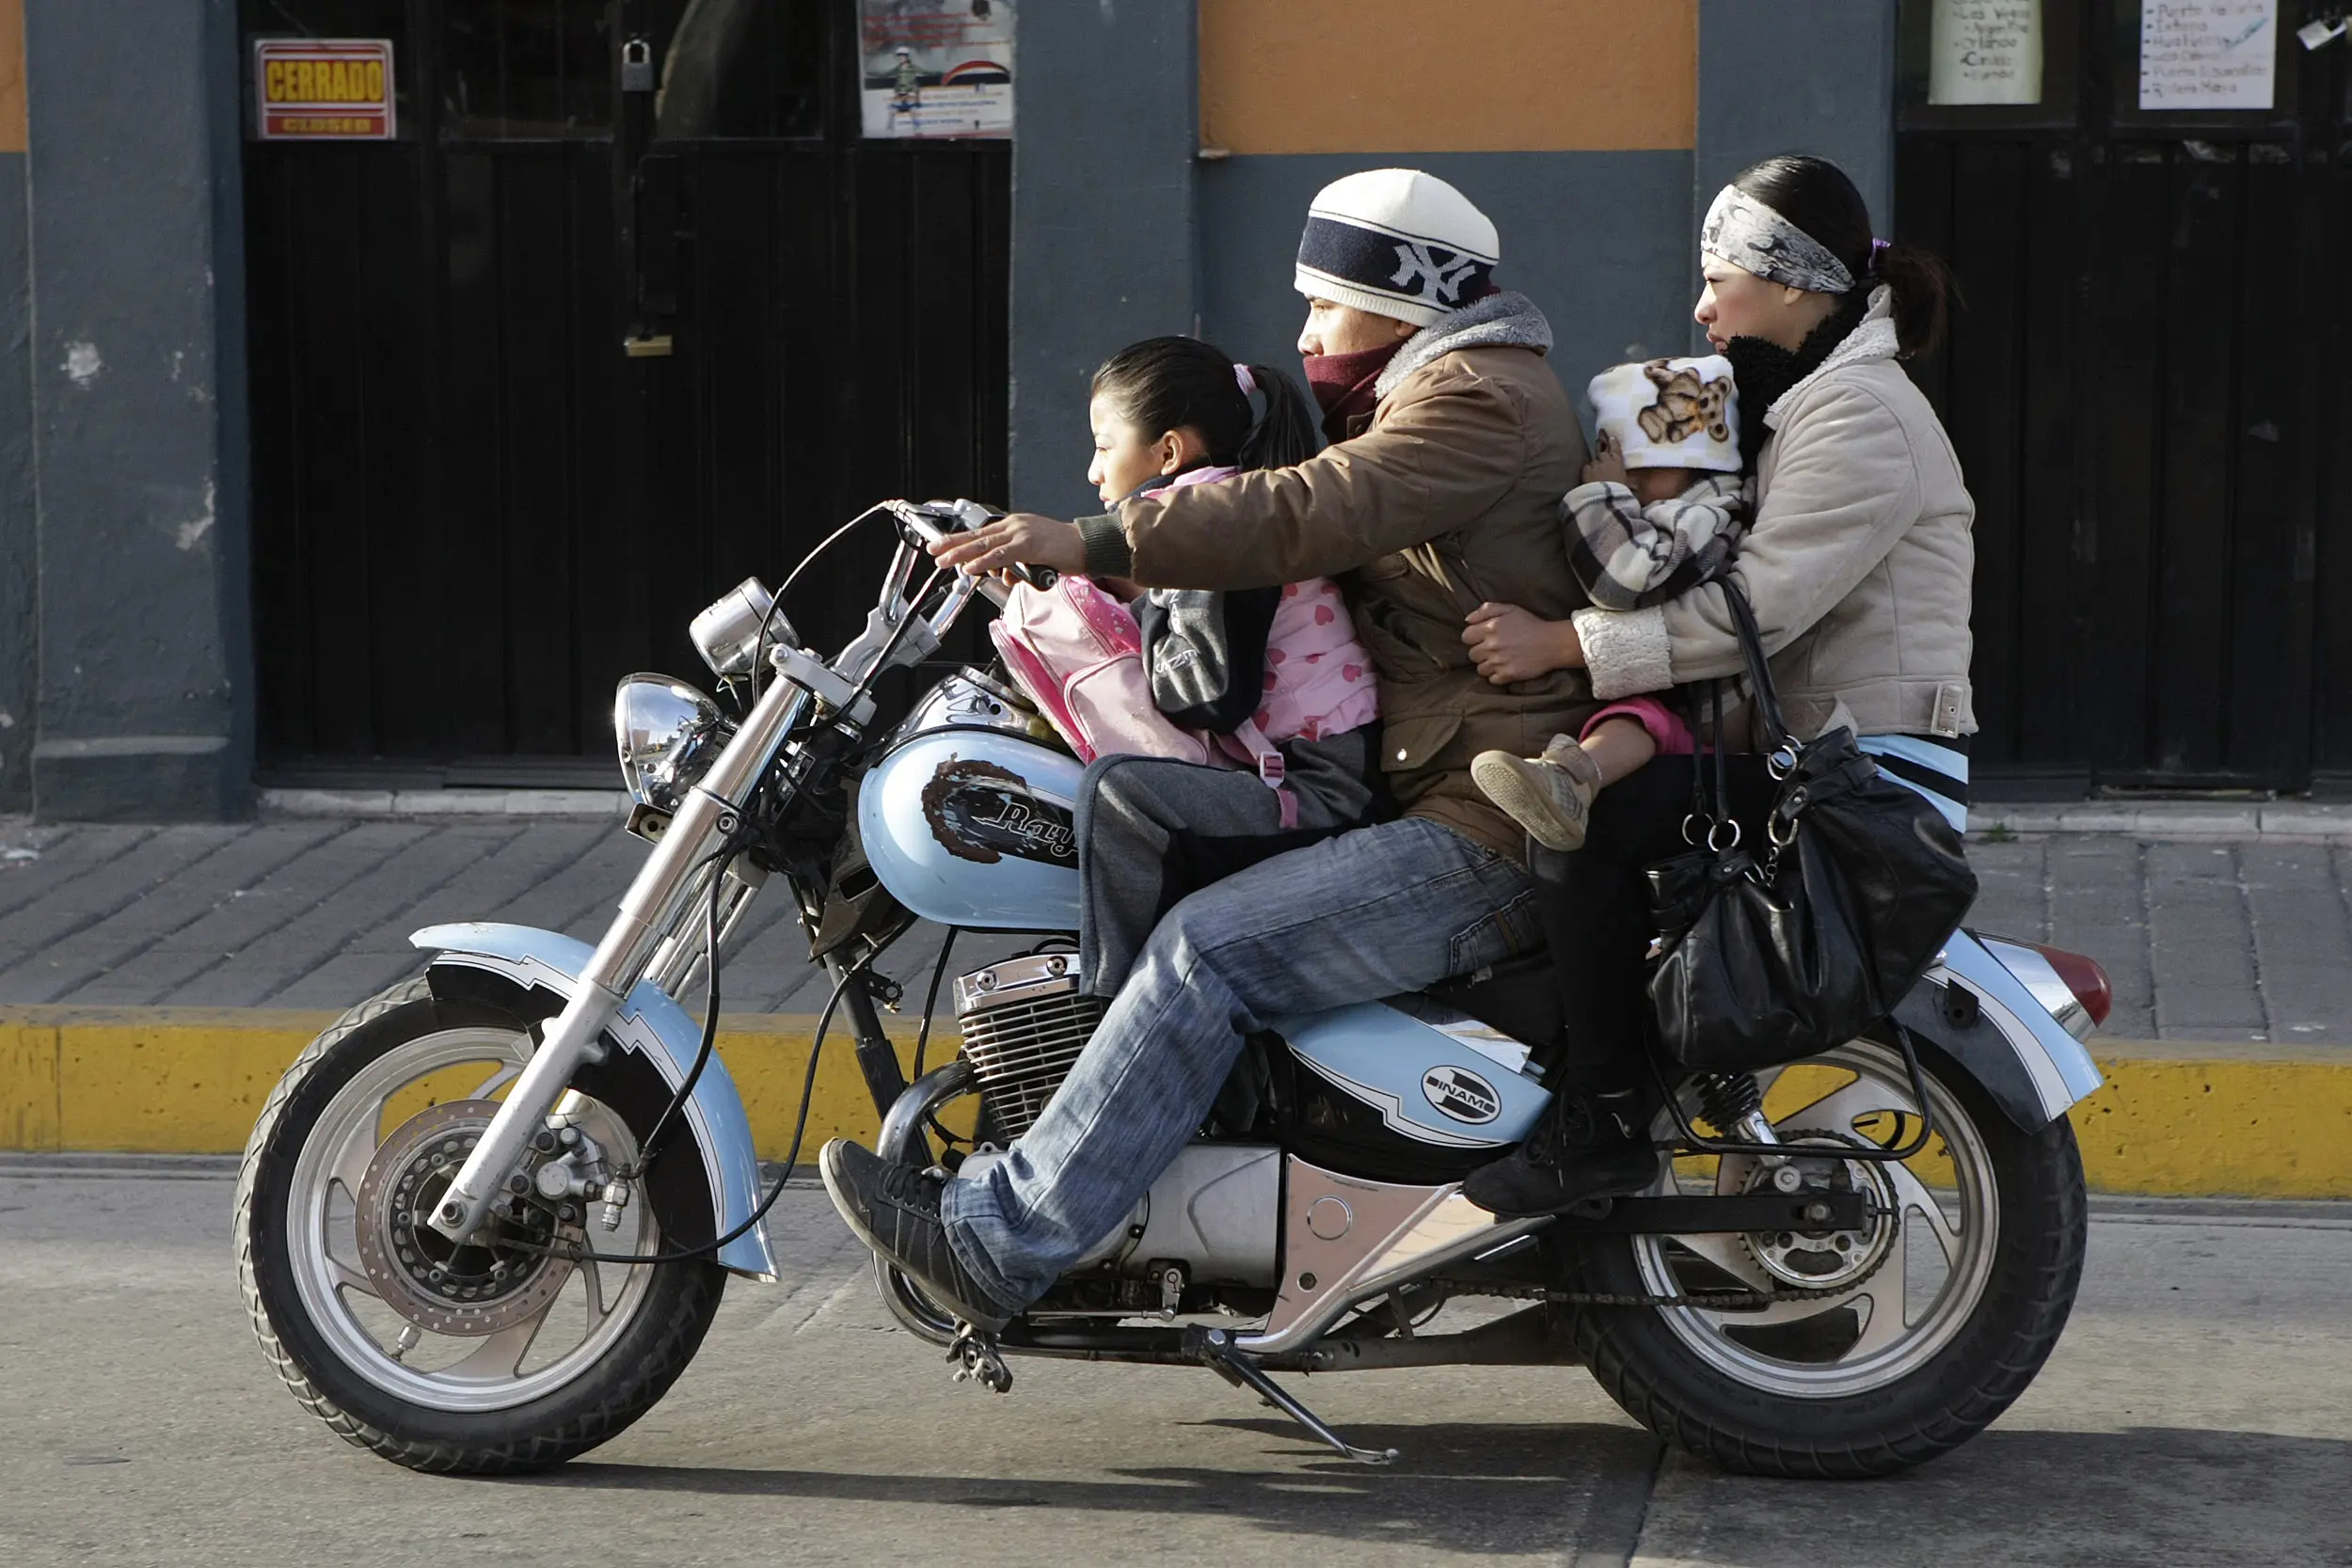 en la motocicleta se puede transportar a dos personas - Cuántas personas pueden movilizarse en una motocicleta